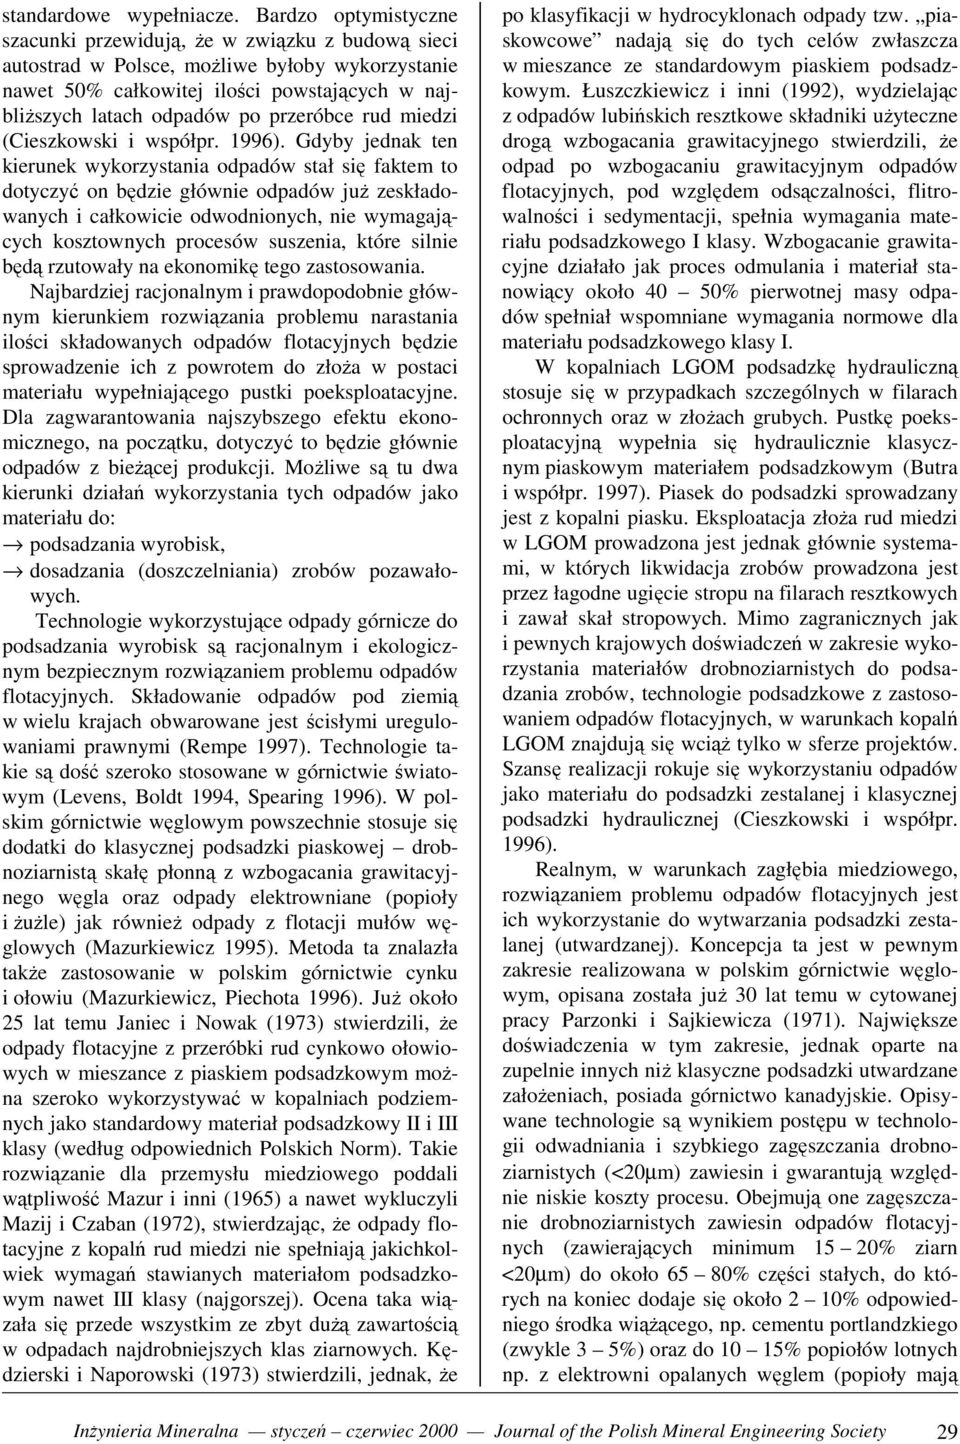 przeróbce rud miedzi (Cieszkowski i współpr. 1996).